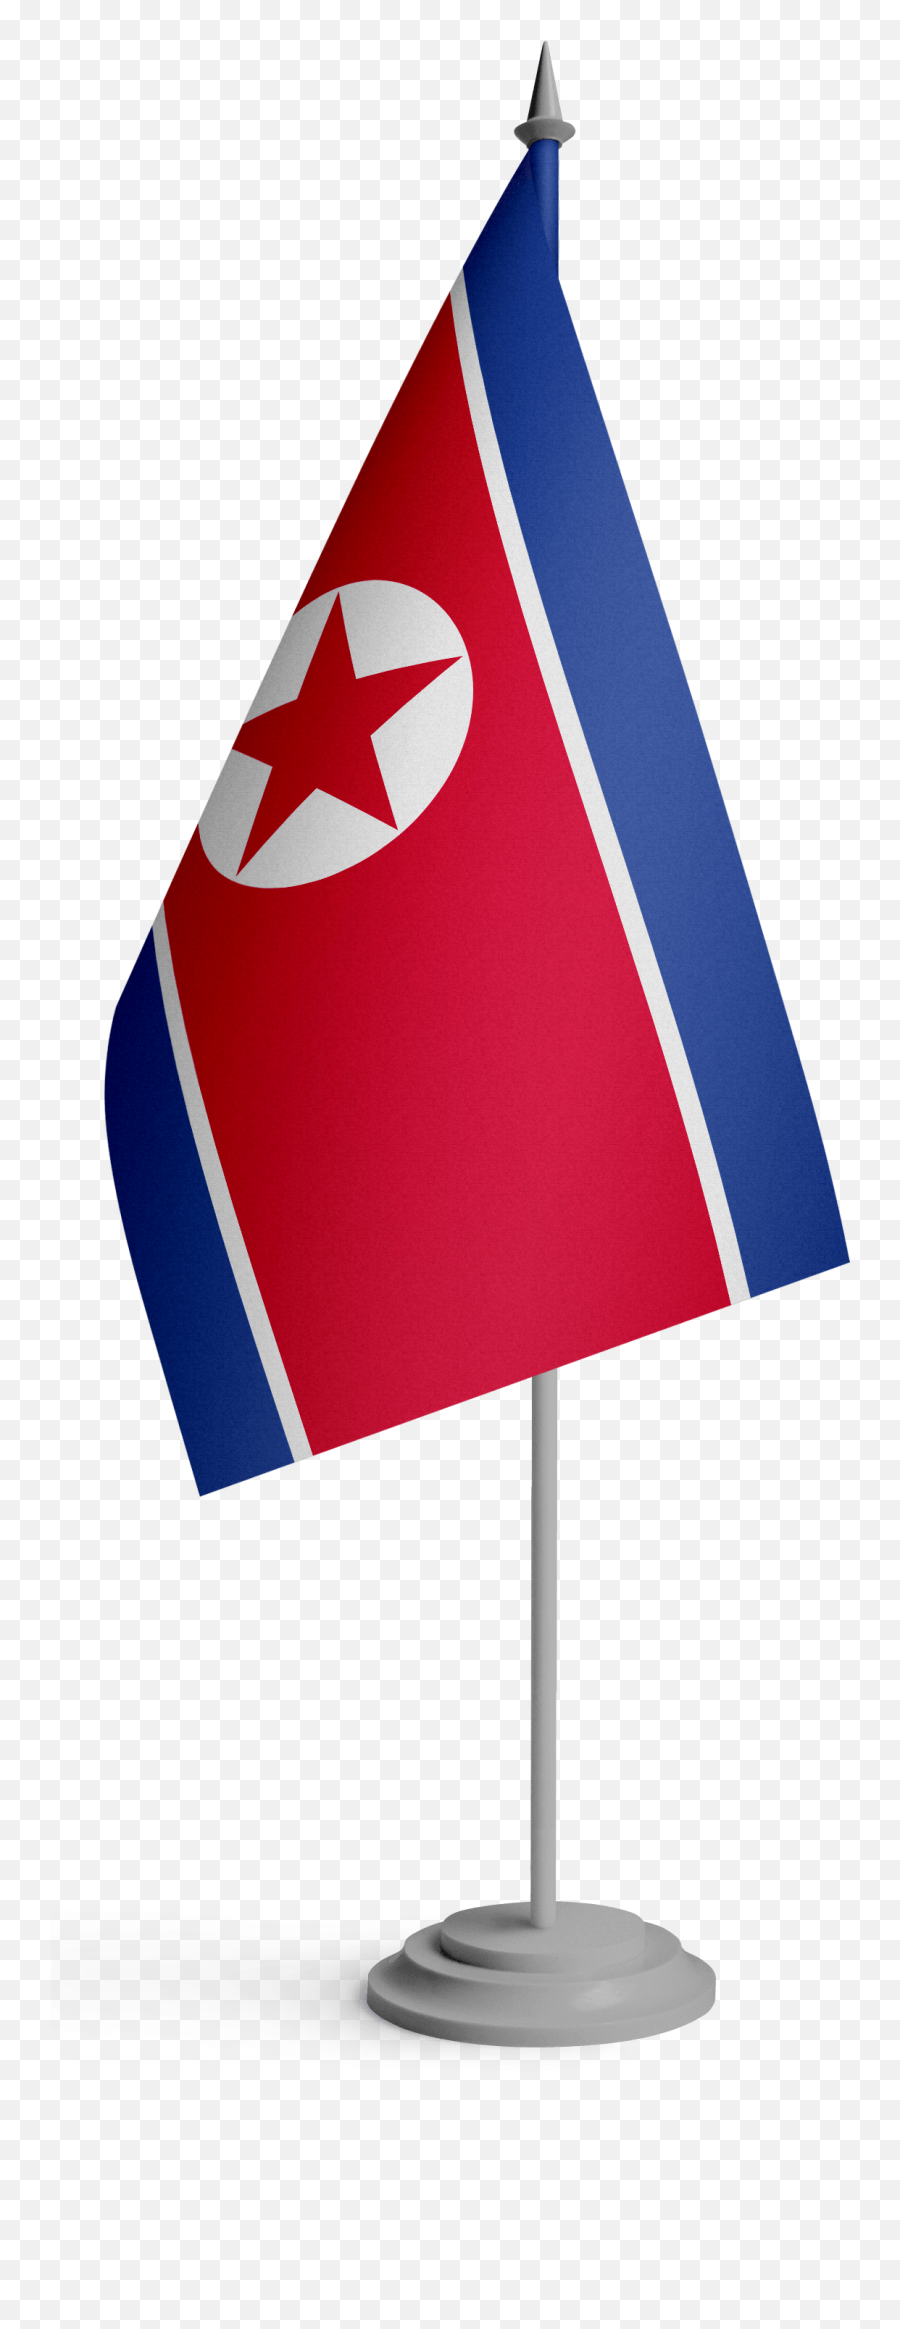 North Korea Flag Png Transparent Images Png All Emoji,Korea Flag Emoji